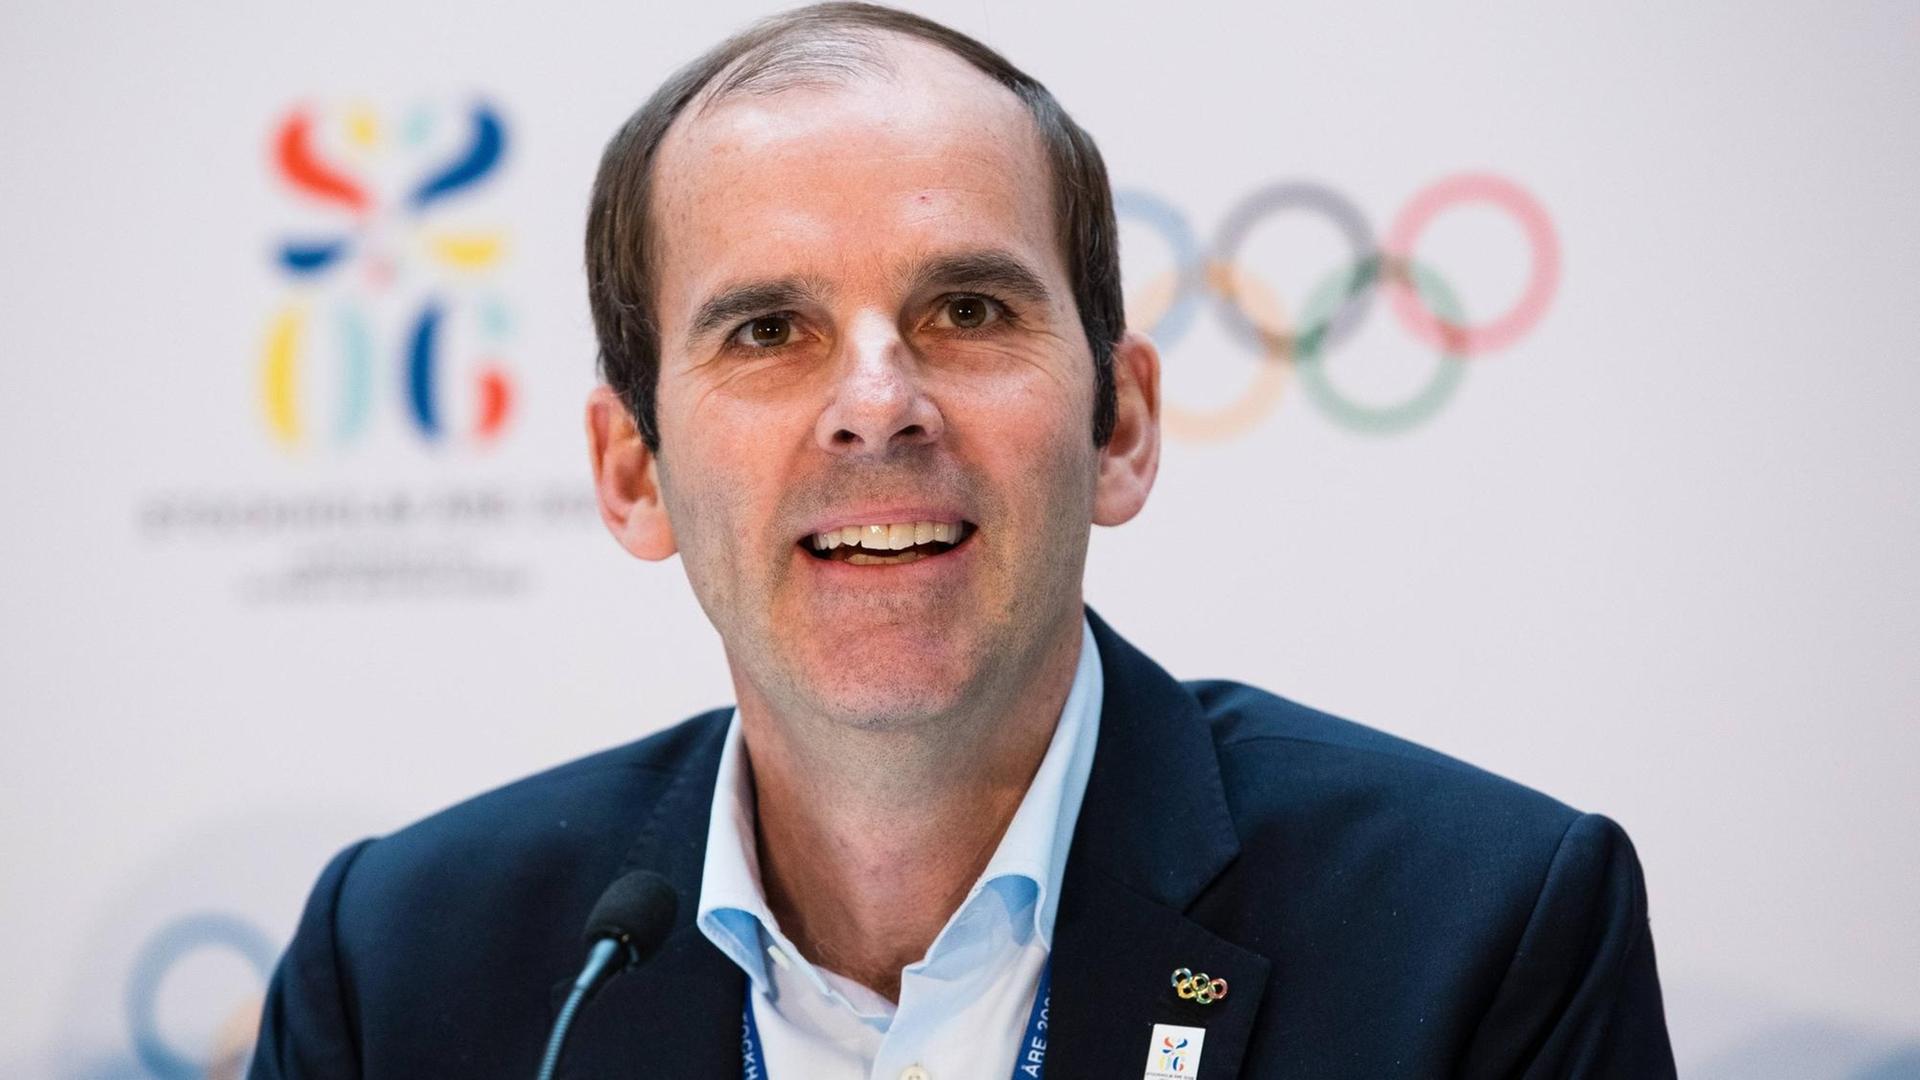 Richard Brisius, Chef der Stockholmer Bewerbung um die Ausrichtung der Olympischen Winterspiele 2026, sitzt während einer Pressekonferenz an einem Mikrofon.